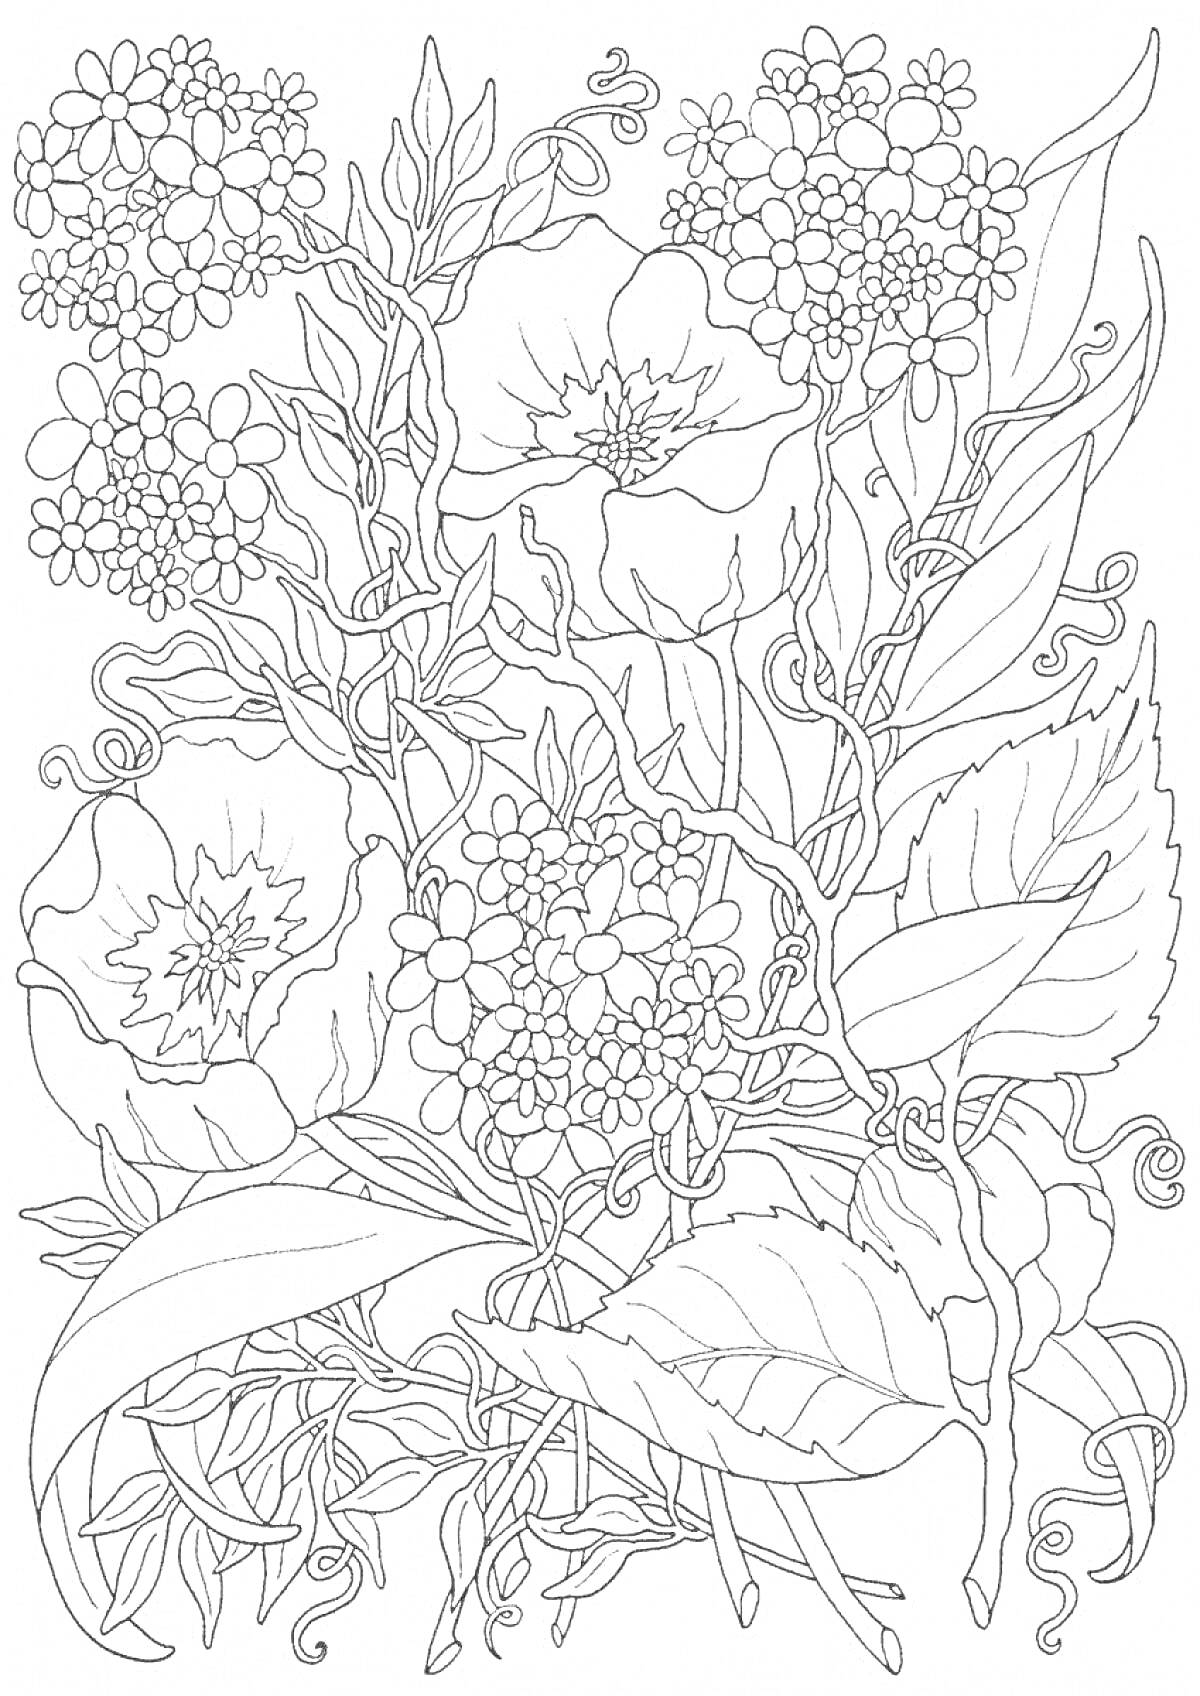 Раскраска Рисунок с крупными цветами и мелкими соцветиями, окруженный растительными листьями и завитками